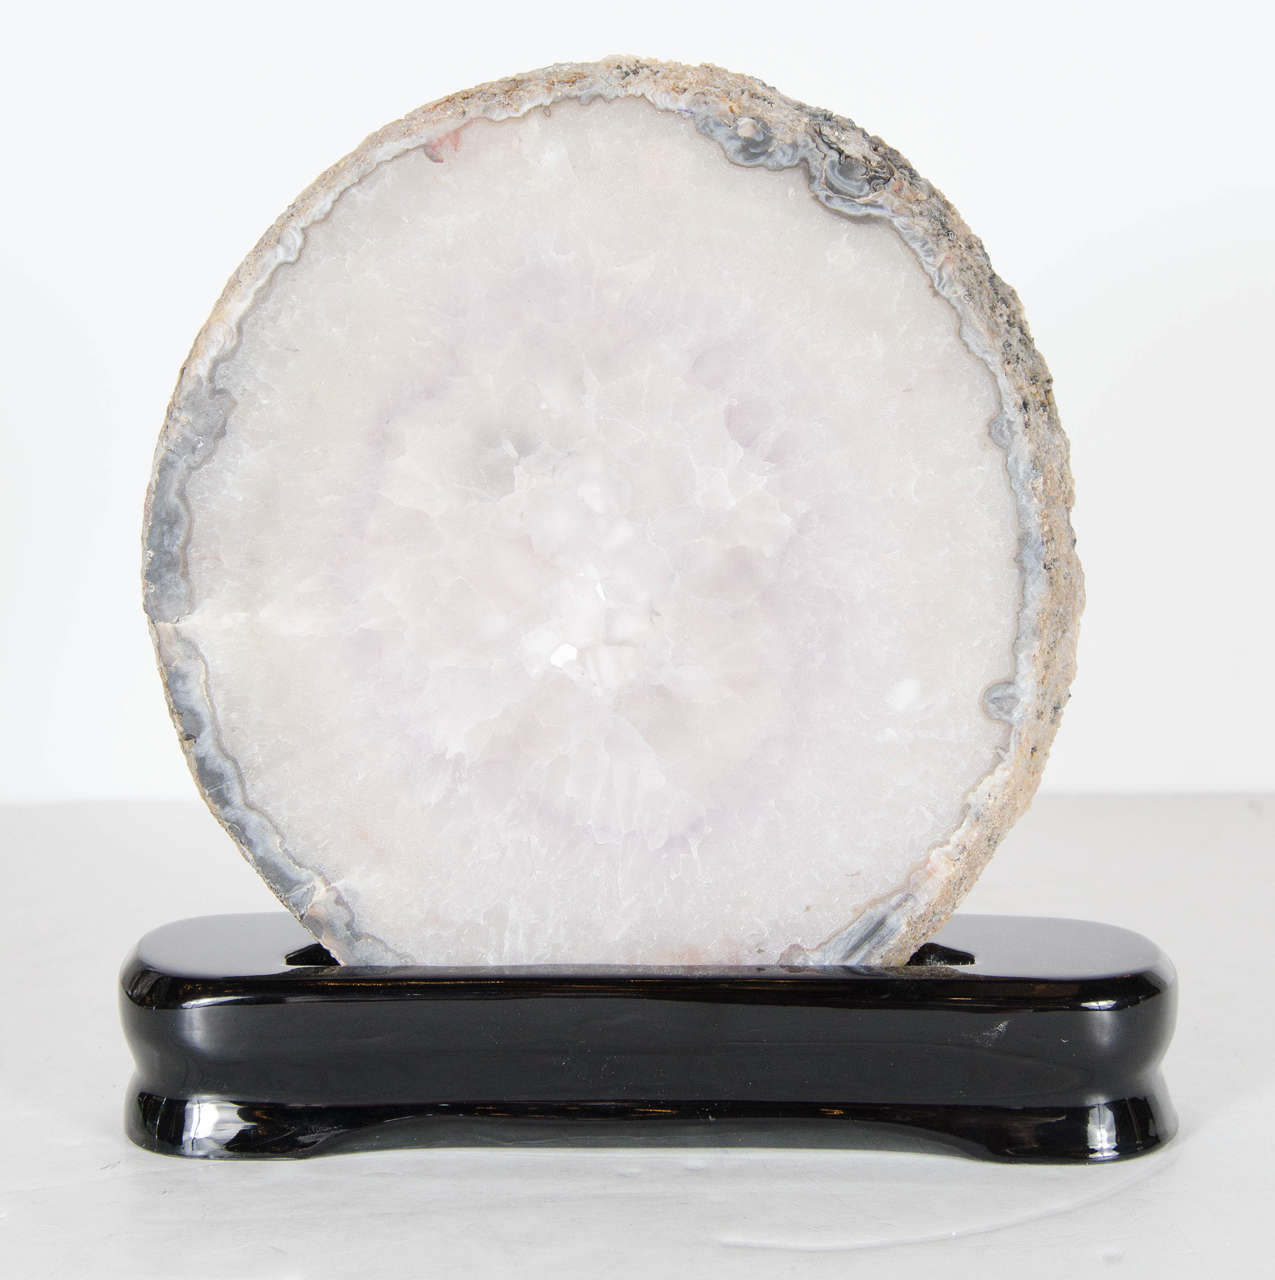 Sliced Organic Geode Crystal Specimen in Lavender and Greys 1